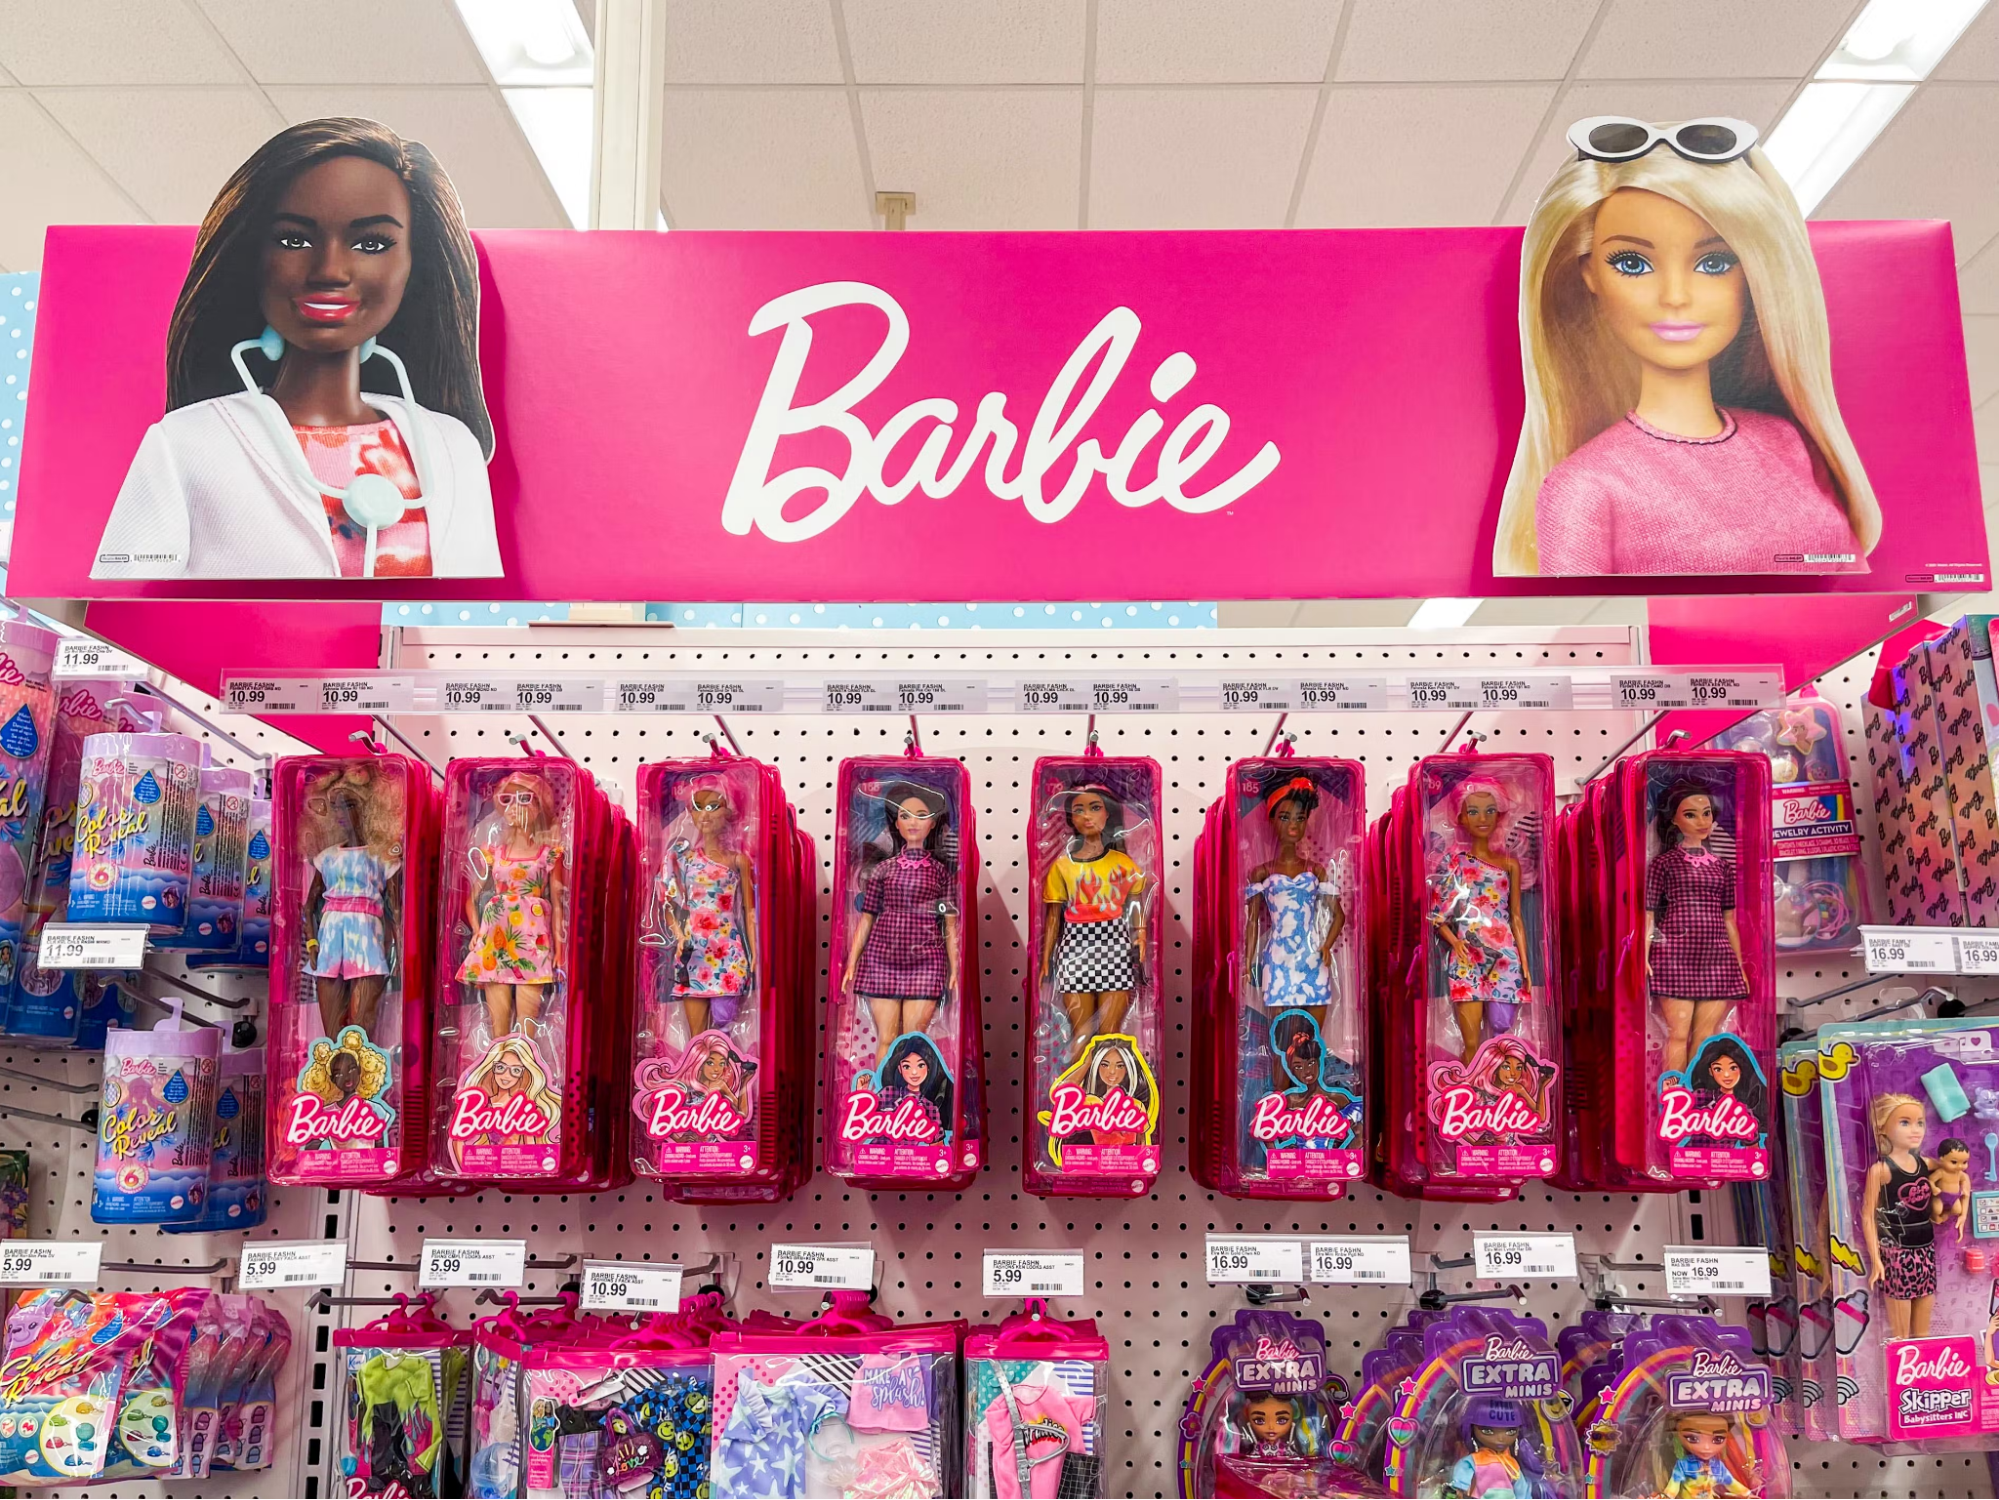 Búp bê Barbie